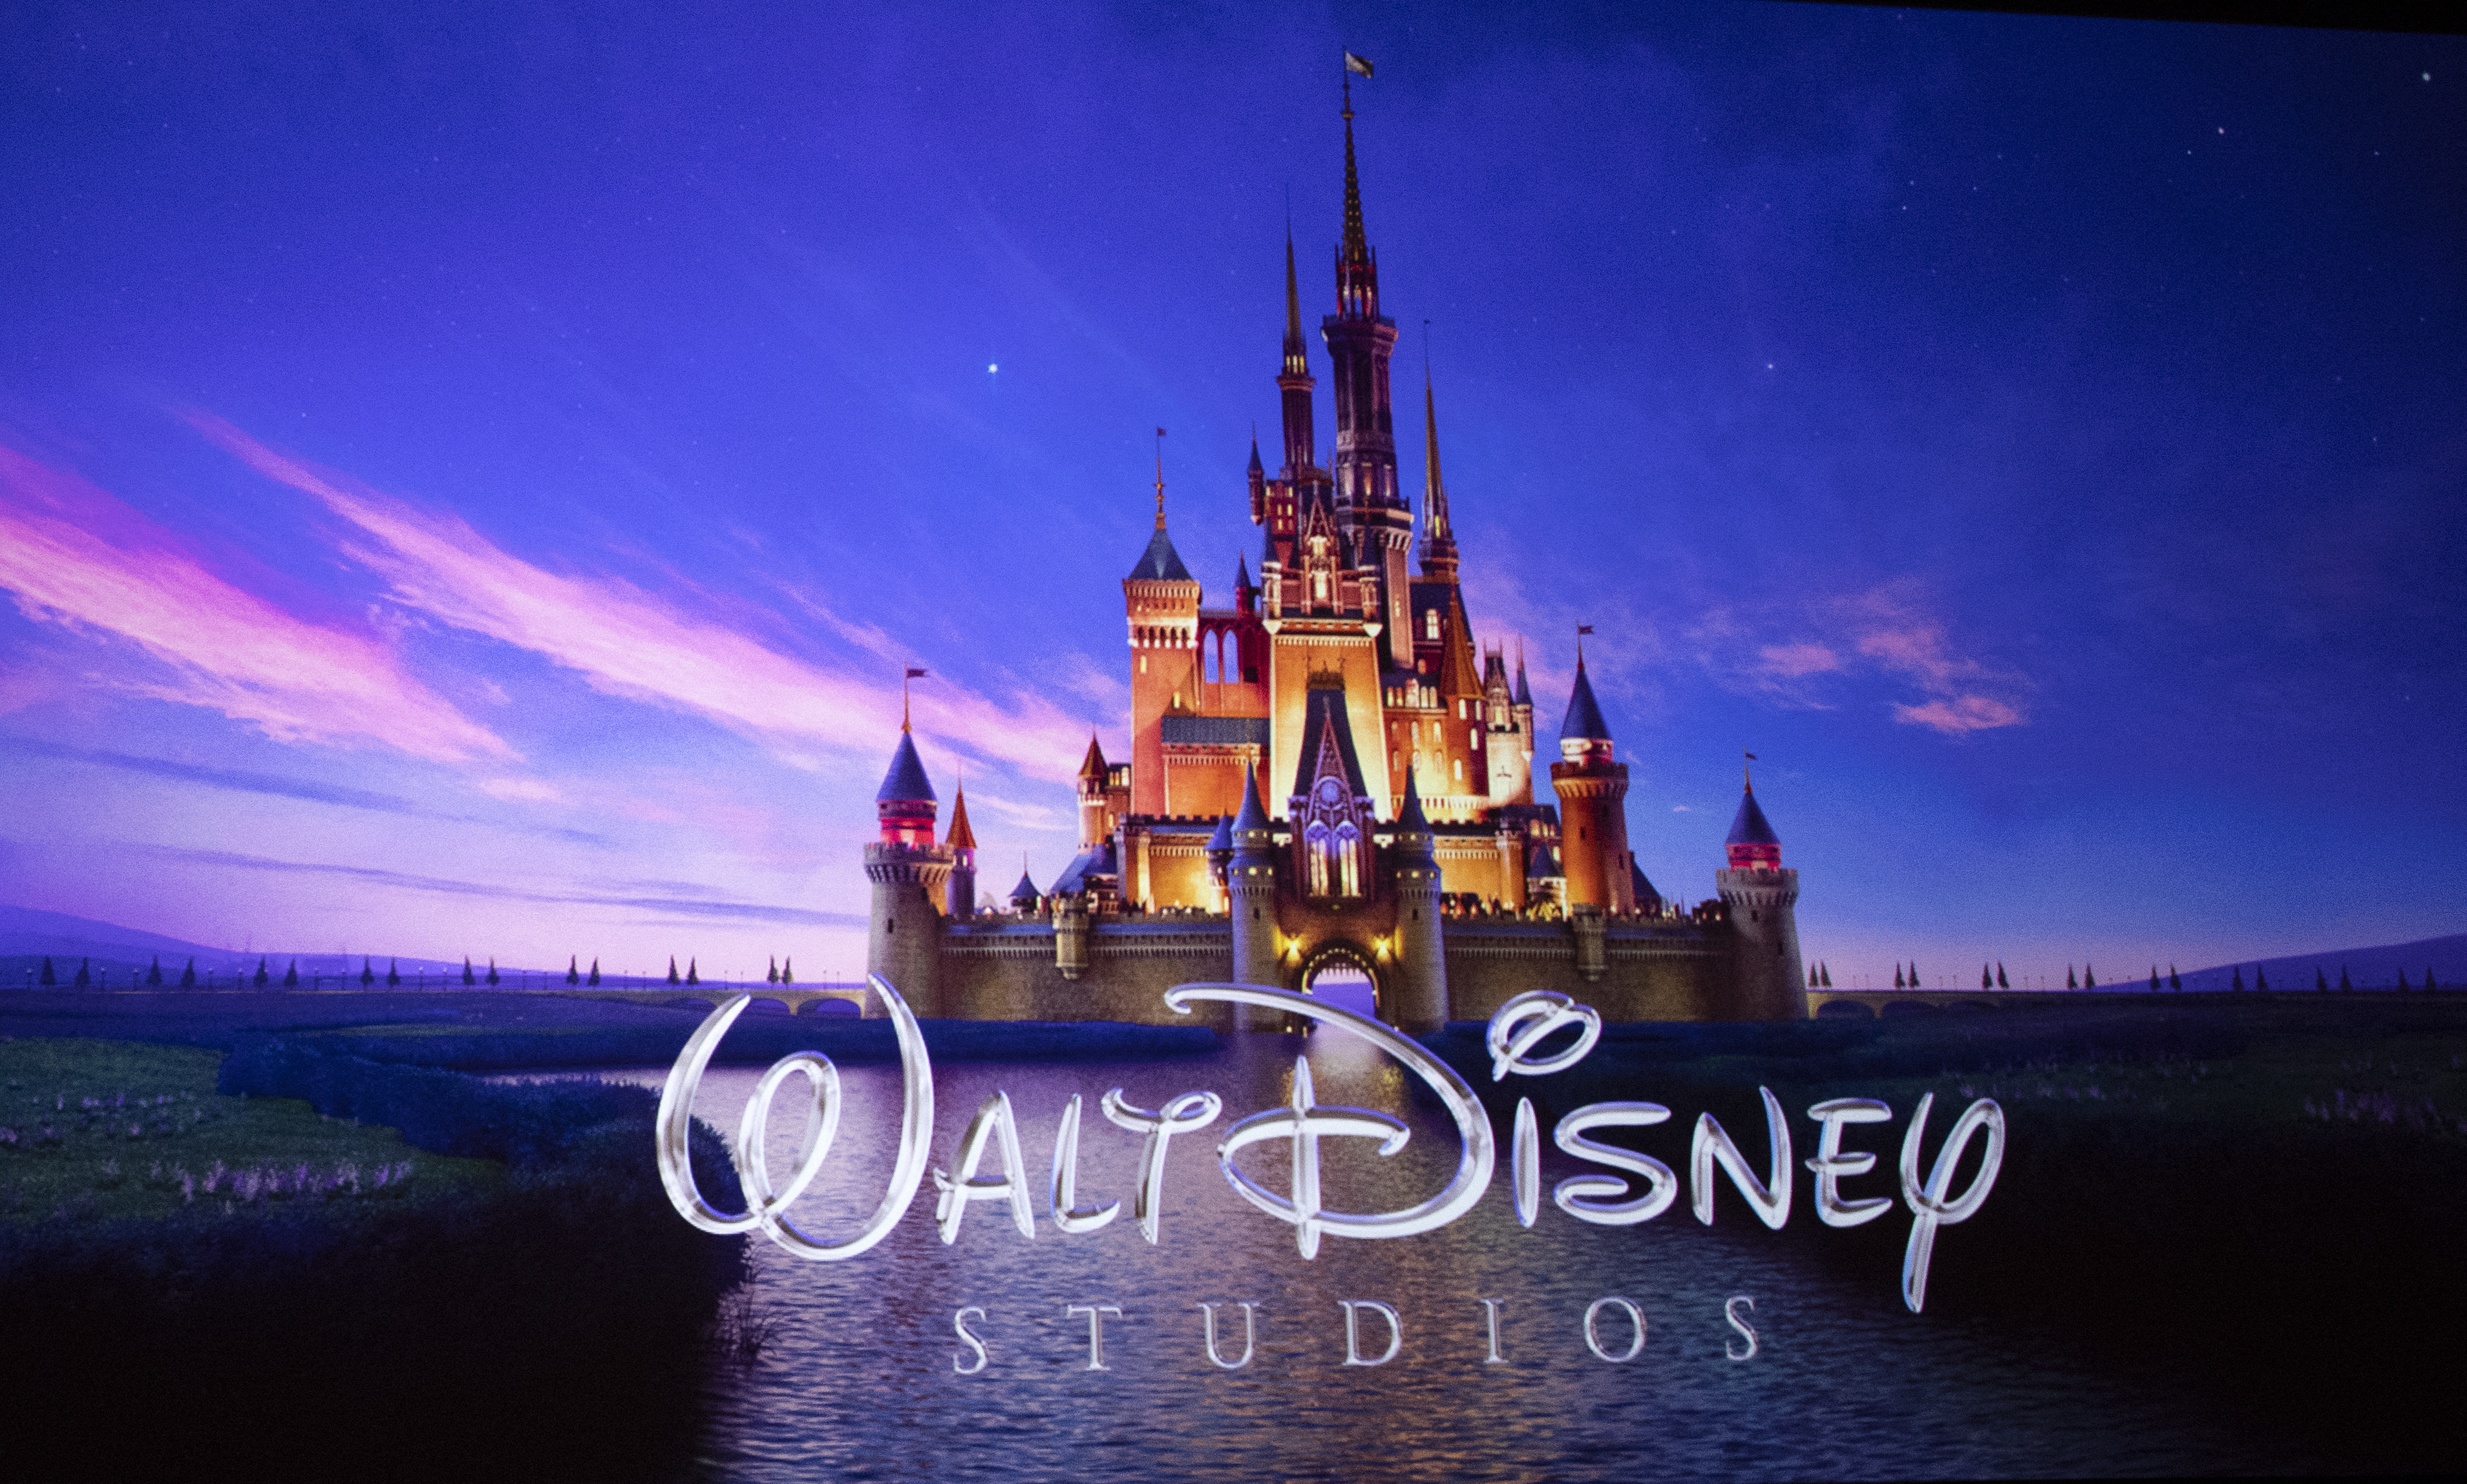 Disney transmite Brasileirão para a América Latina